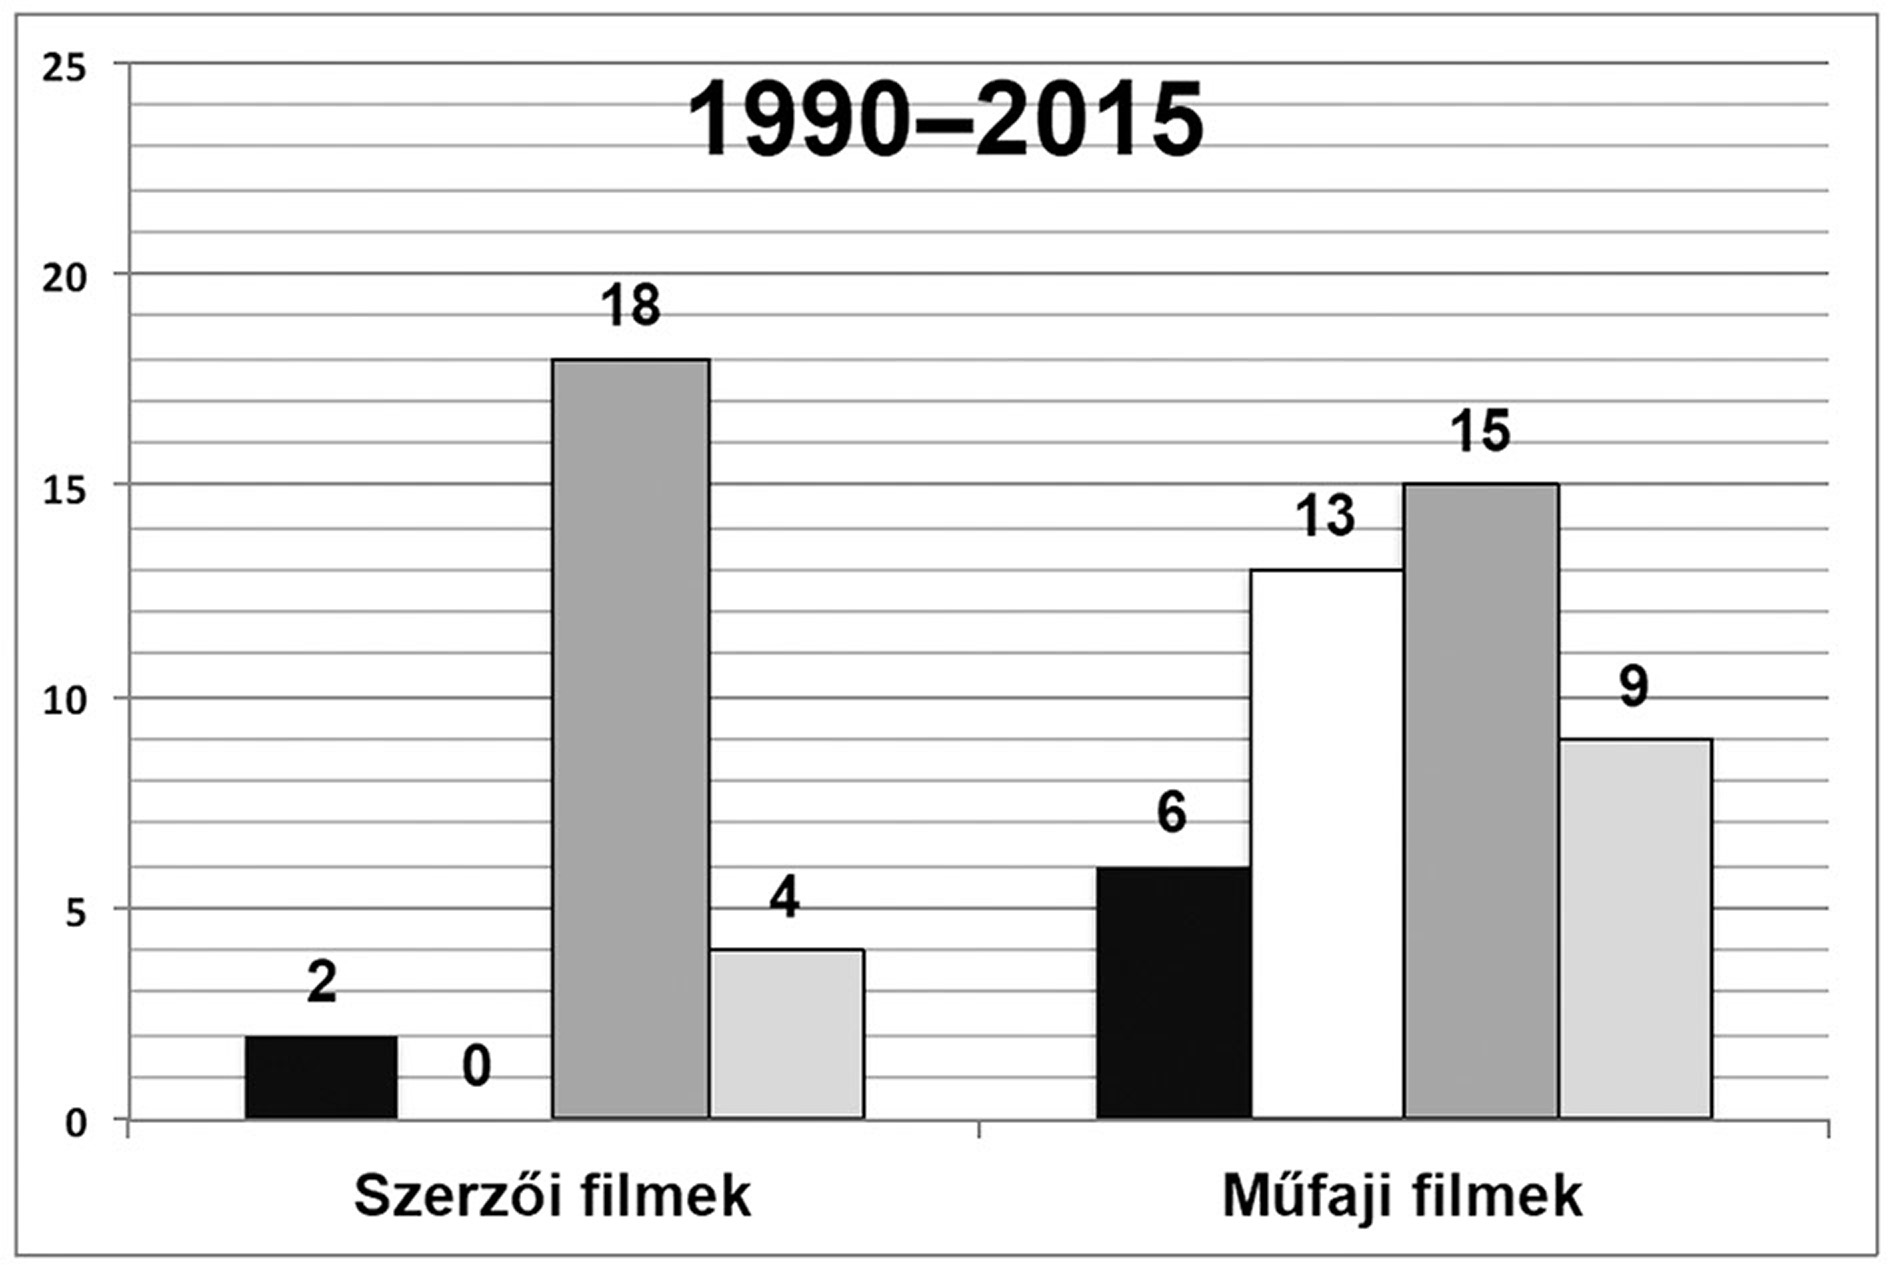 8. ábra: A női főszereplők mobilitási értékeinek megoszlása a műfaji és szerzői filmek között (a filmek darabszáma szerint)